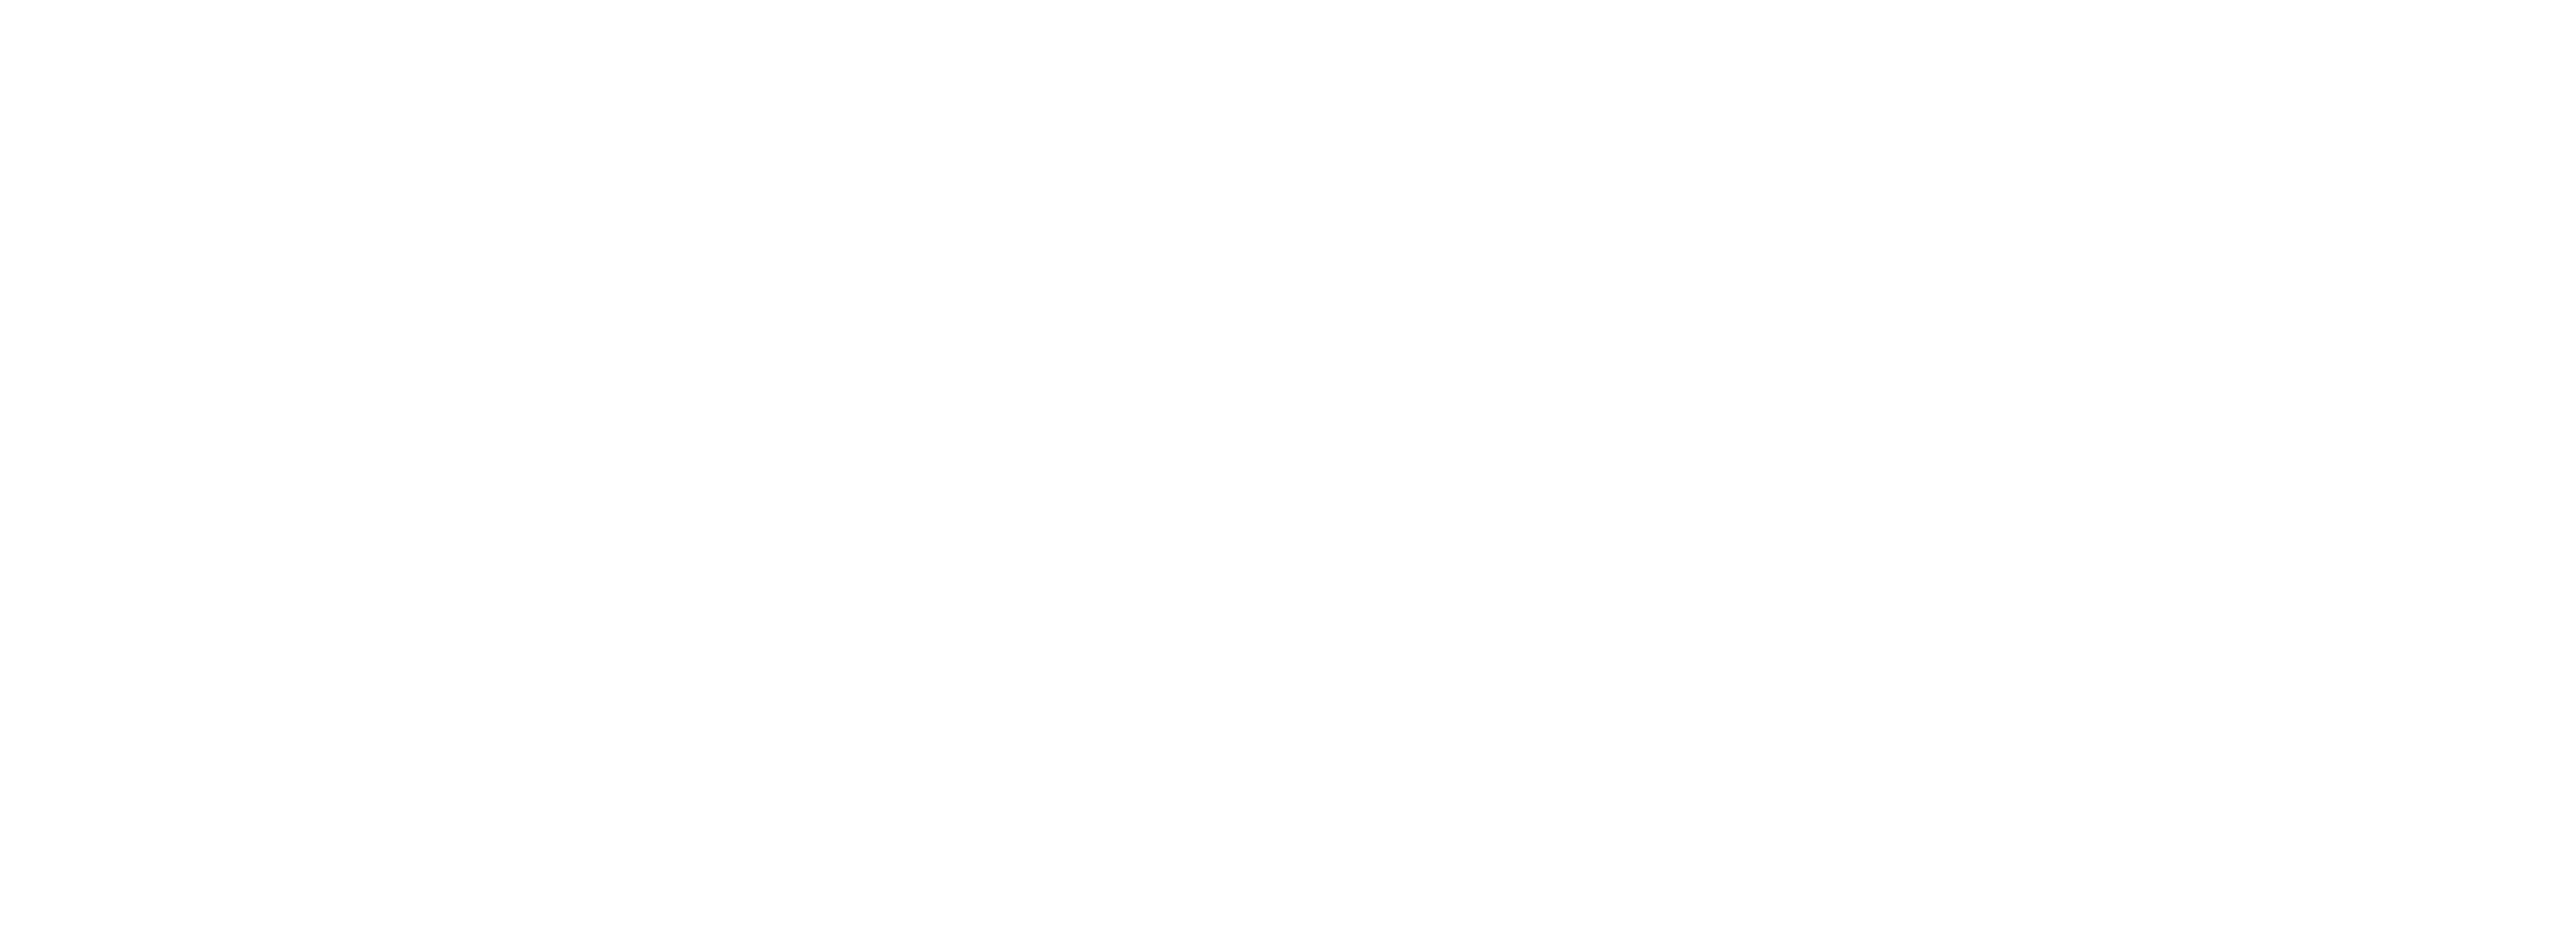 Zenmov